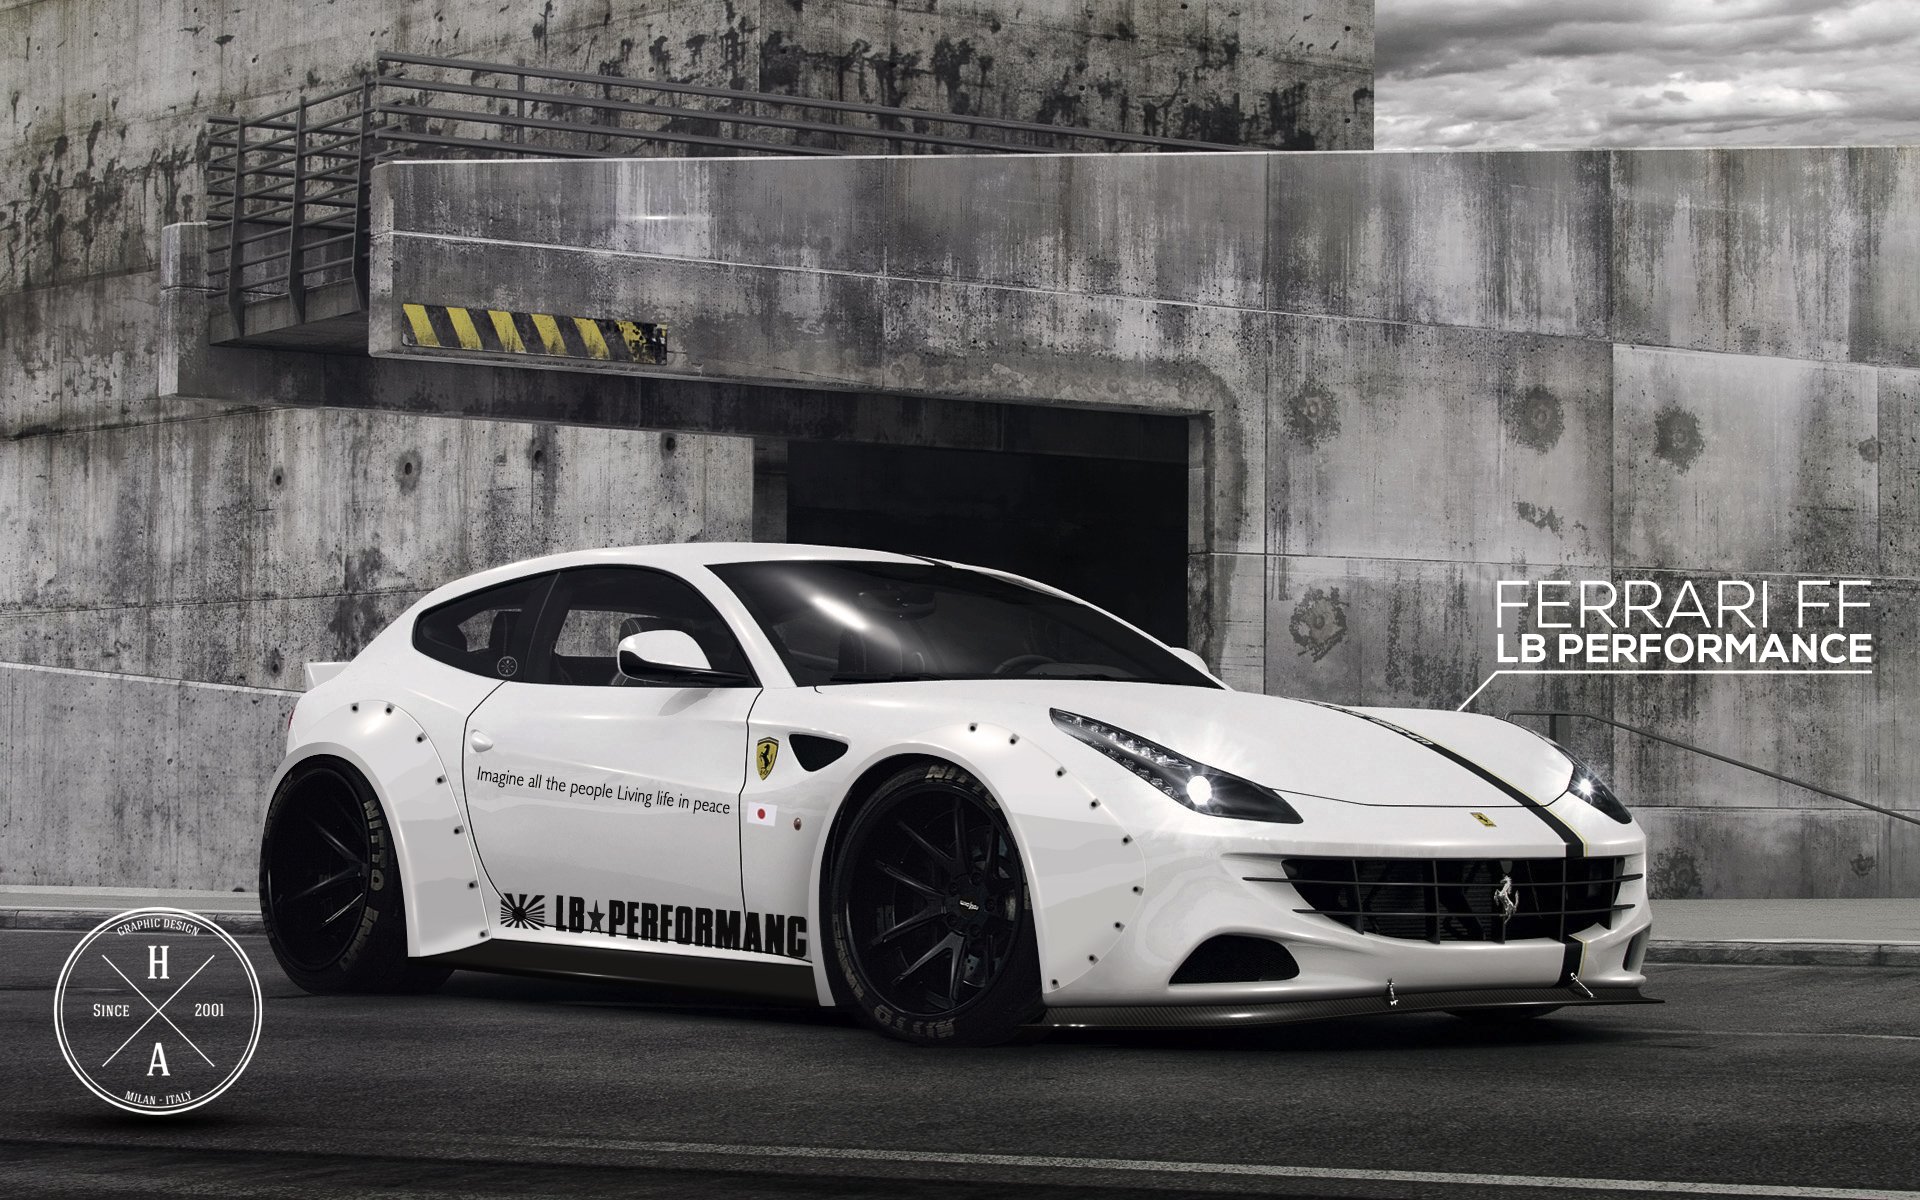 lb, Performance, Ferrari, Ff Wallpaper